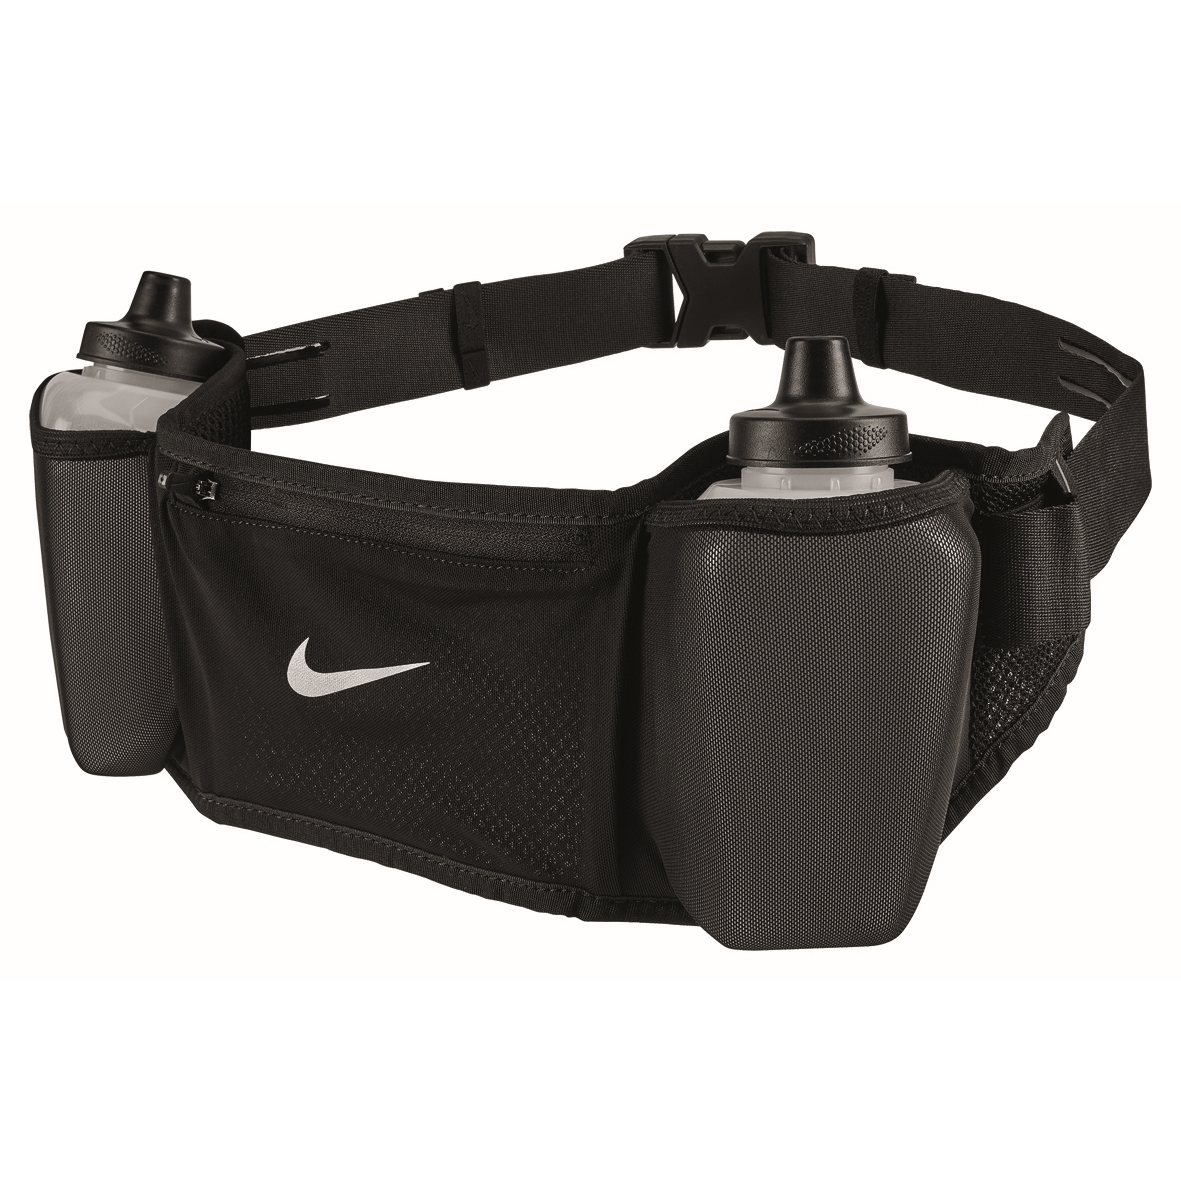 Productfoto van Nike Flex Stride Double Drinkriem 24 oz / 709ml - zwart/zwart/zilver 082